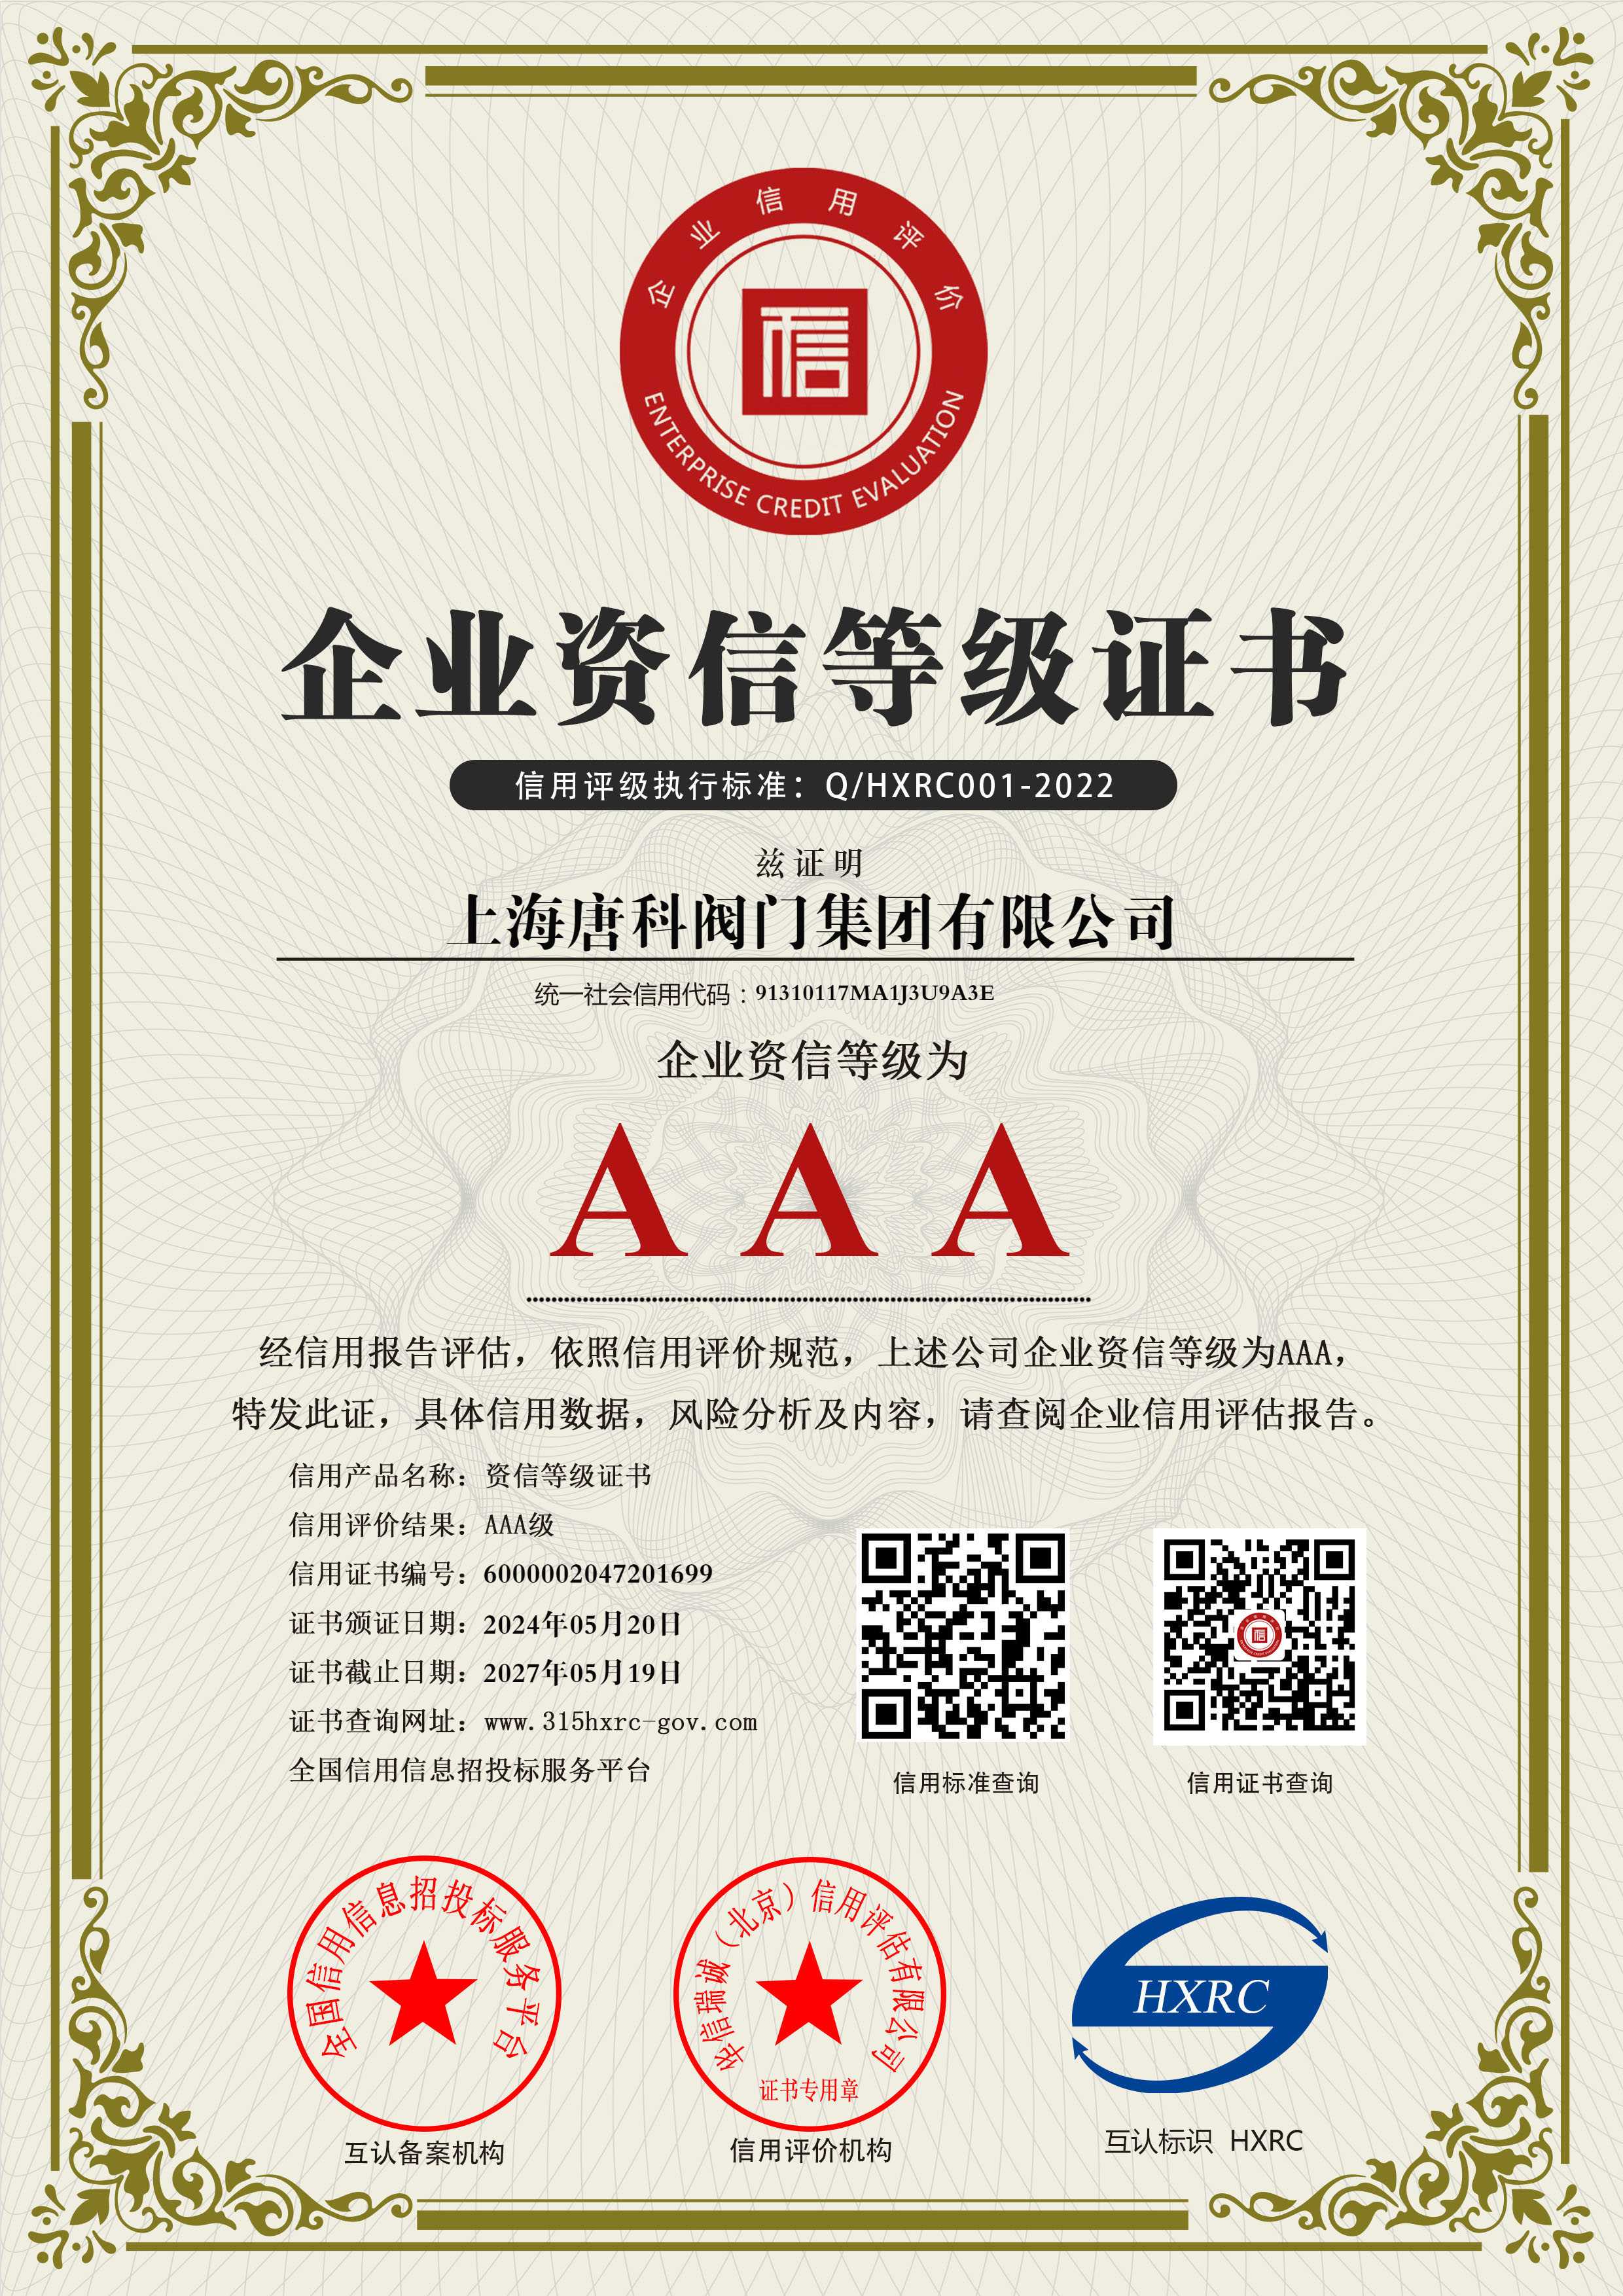 16 上海唐科閥門集團有限公司-AAA級資信企業-新版